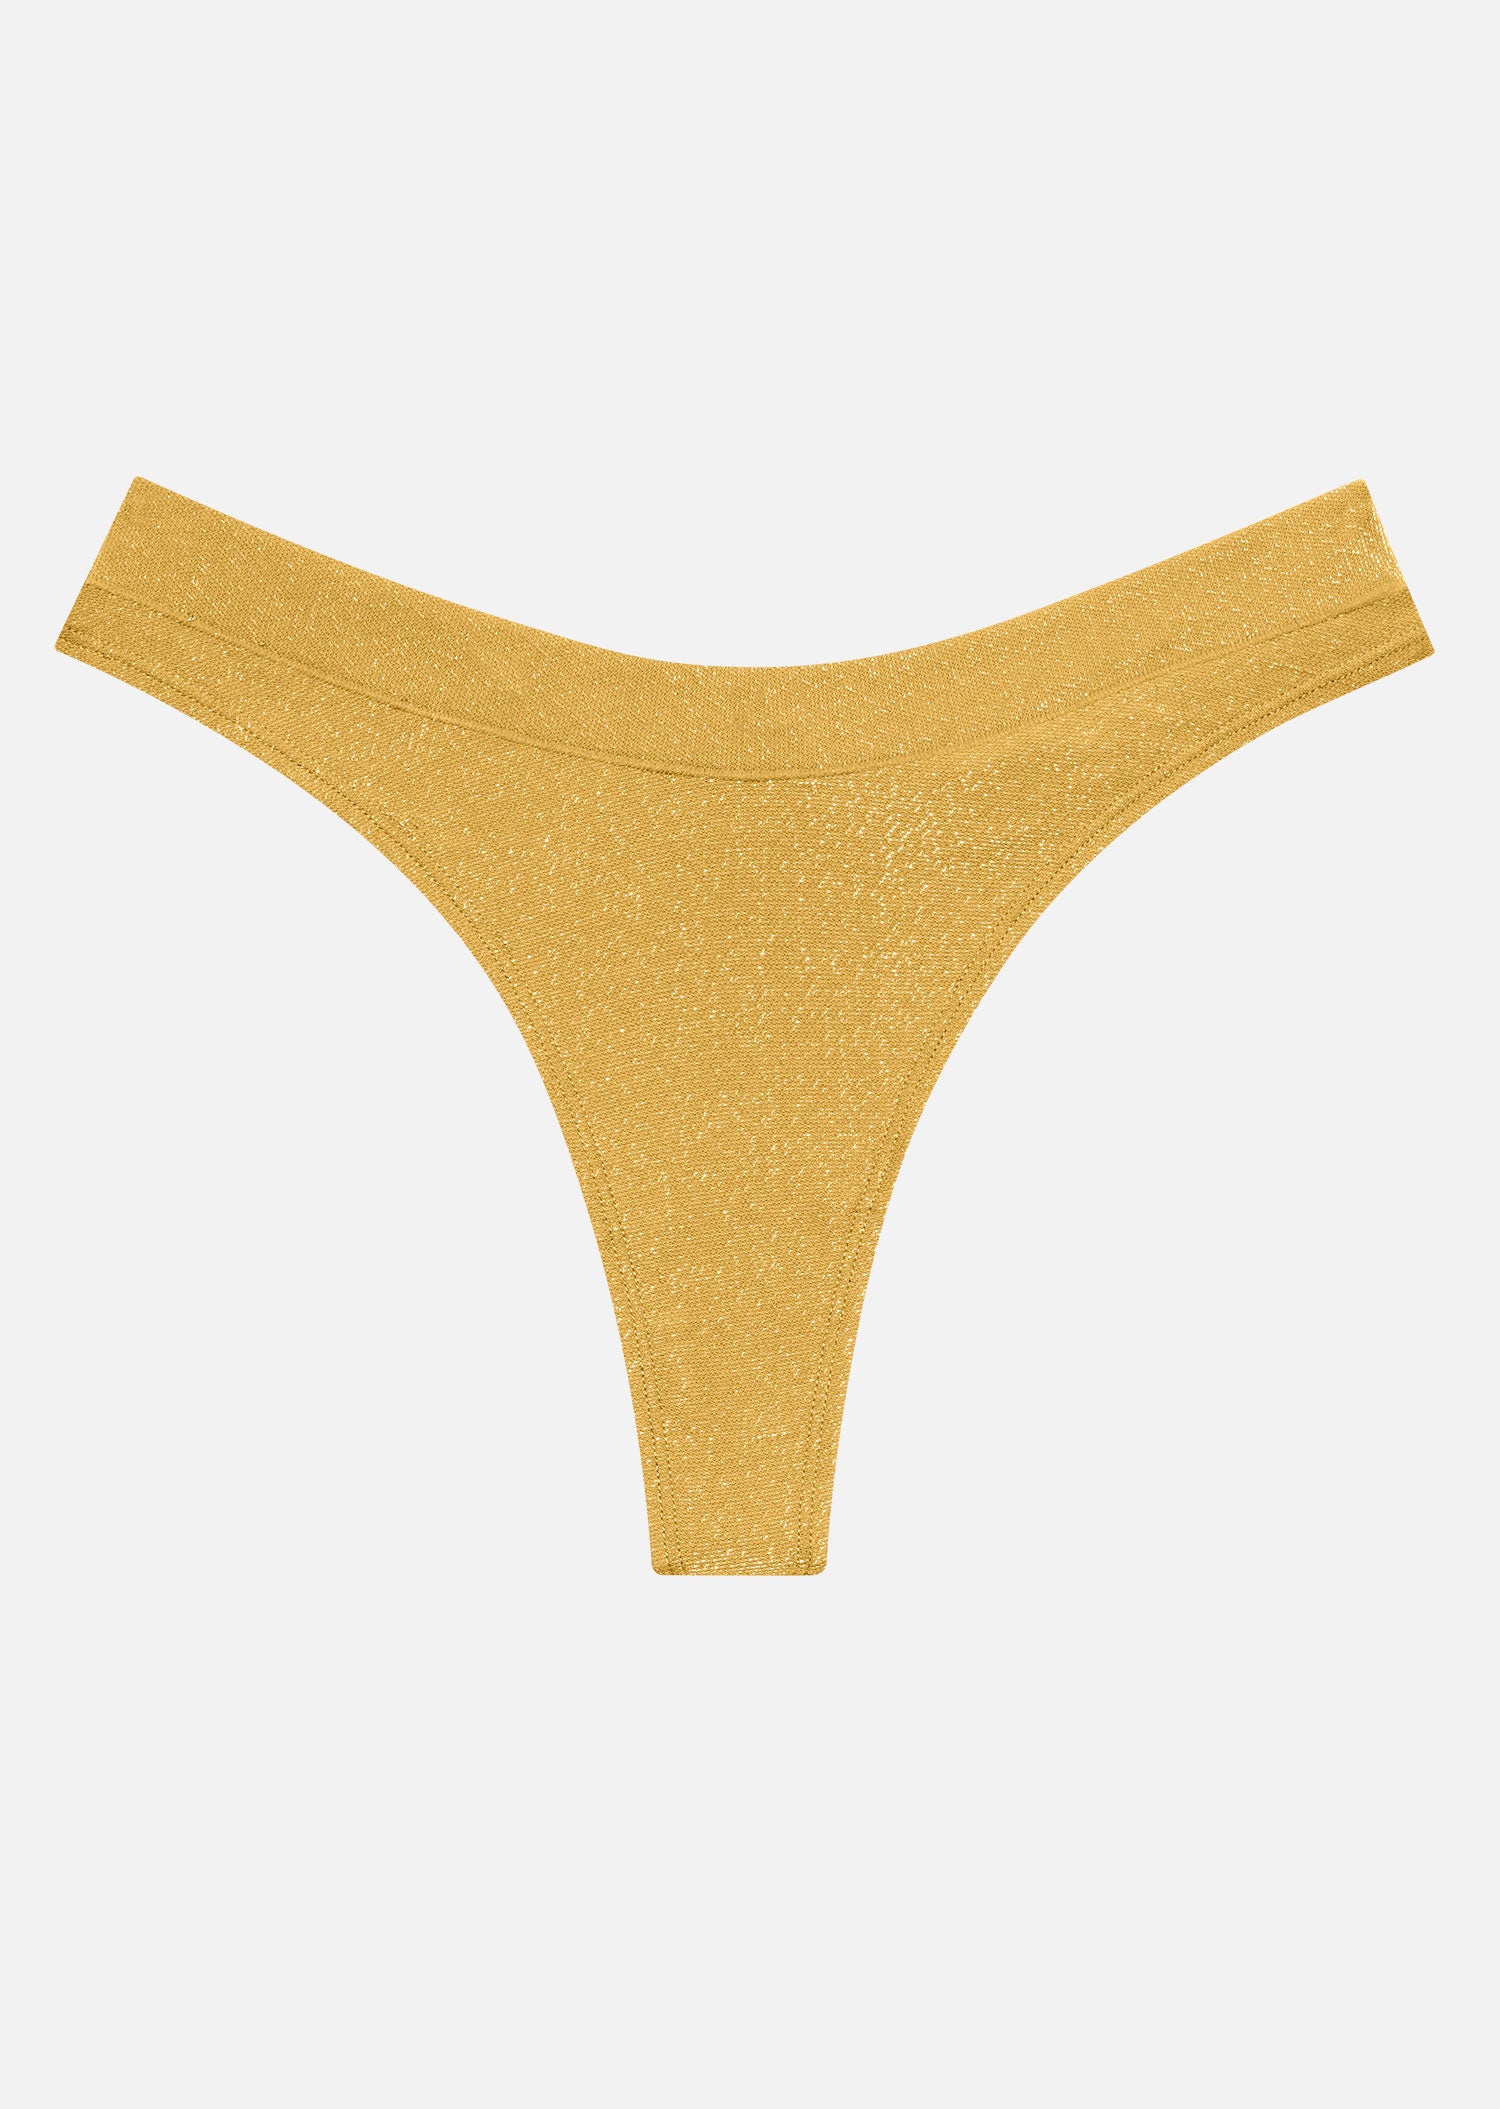 CUUP Lurex Underwear Holiday Collection Release